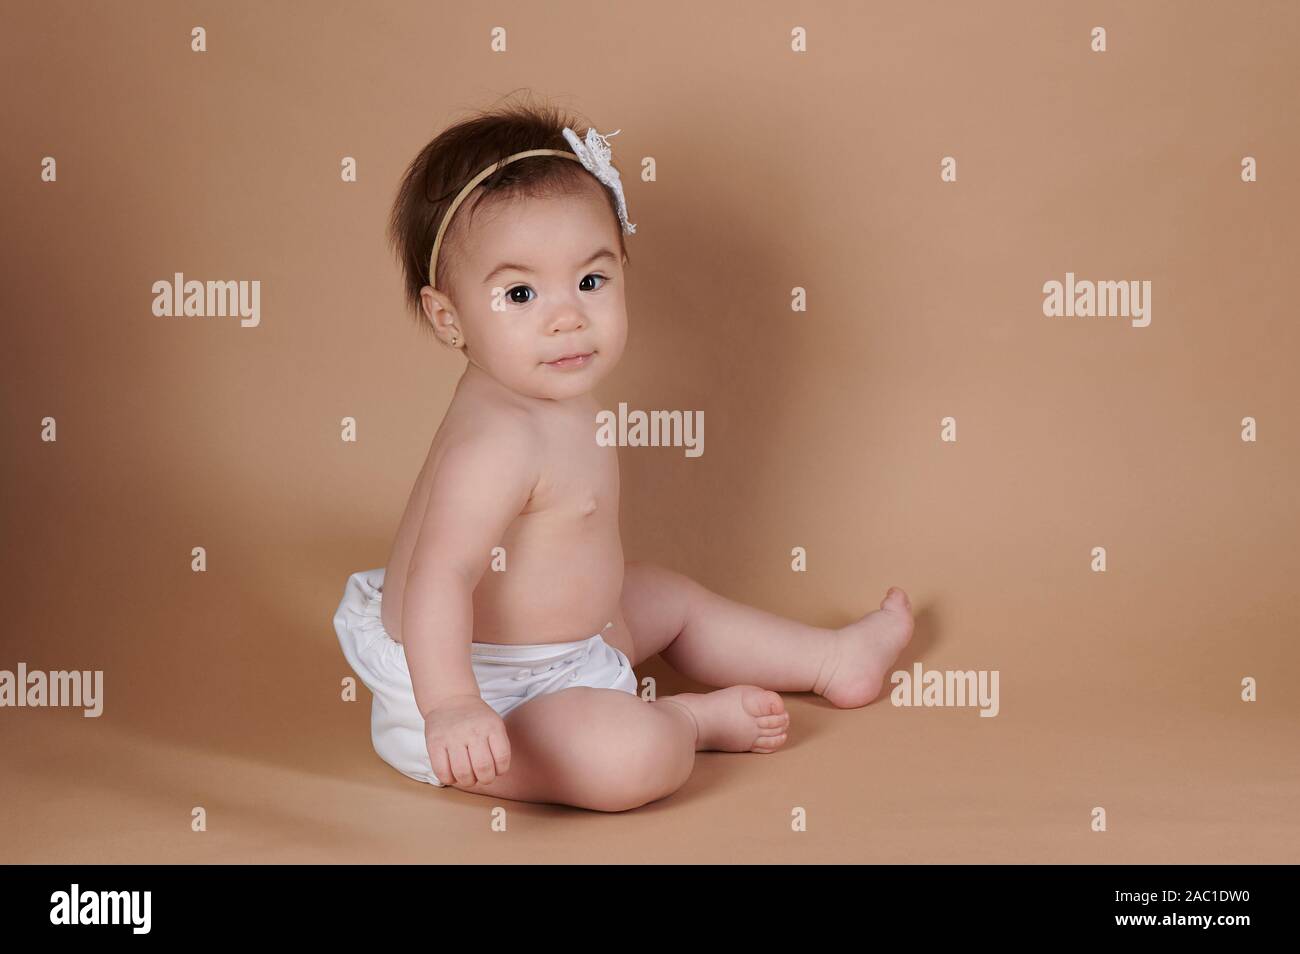 Ein Baby Mädchen sitzen auf braune Farbe studio Hintergrund Stockfoto